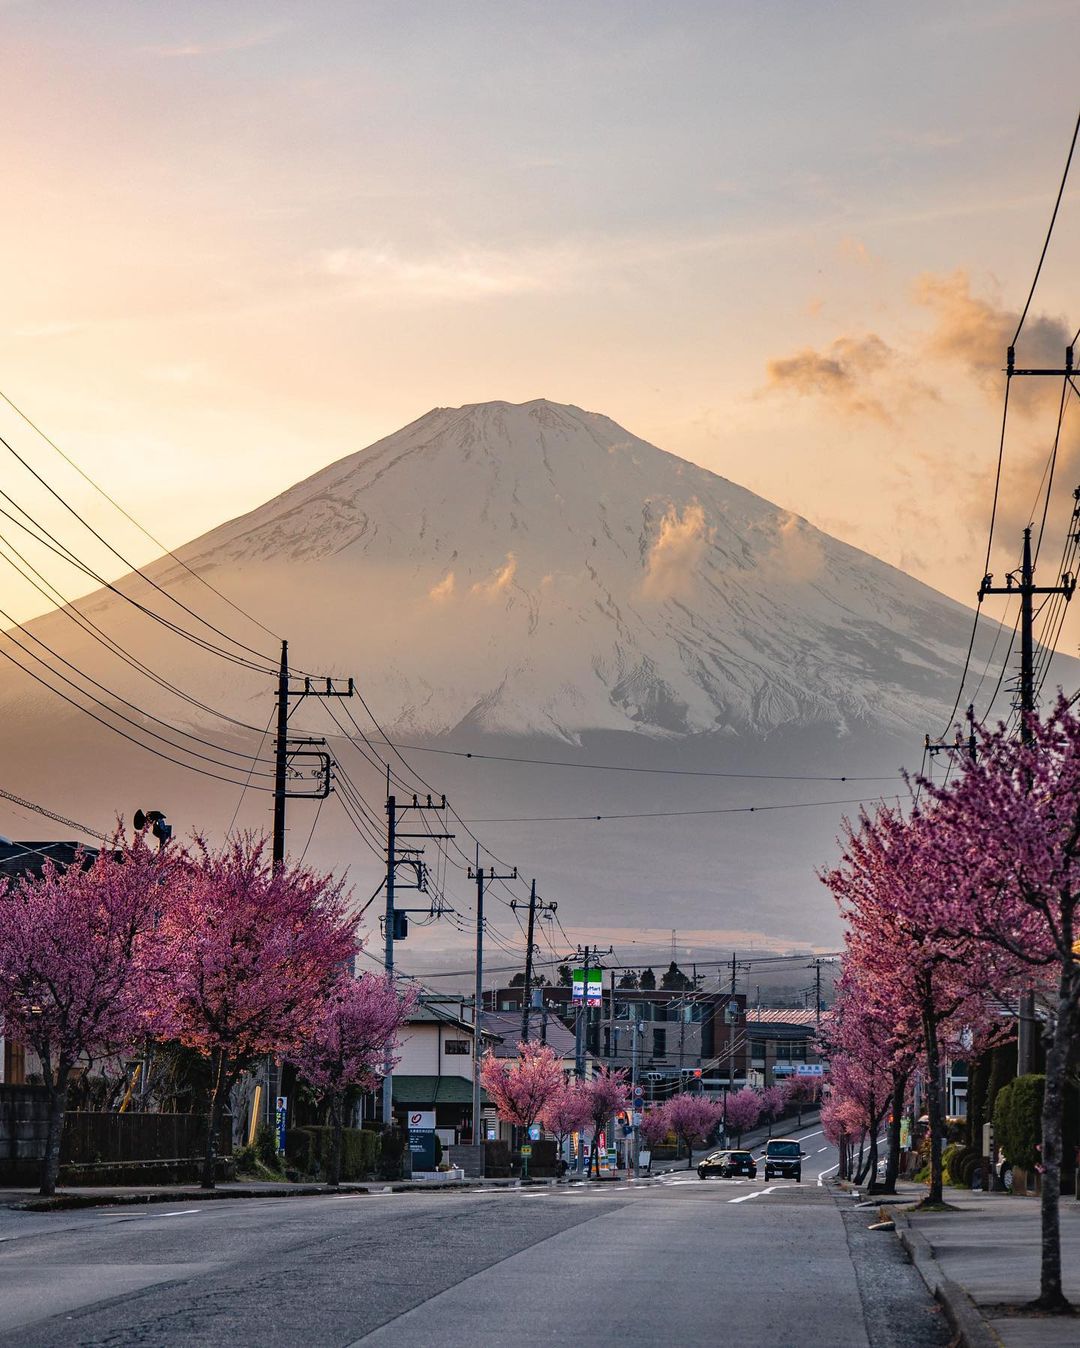 В Японии начался сезон цветения сакур, и улицы Токио уже утопают в цвету: ФОТО